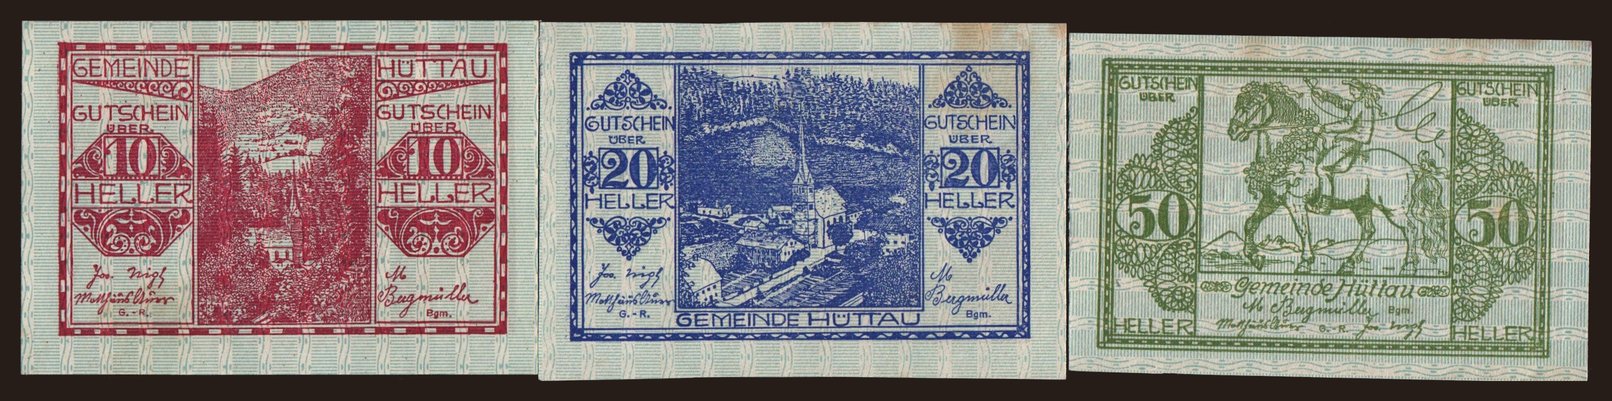 Hüttau, 10, 20, 50 Heller, 1920